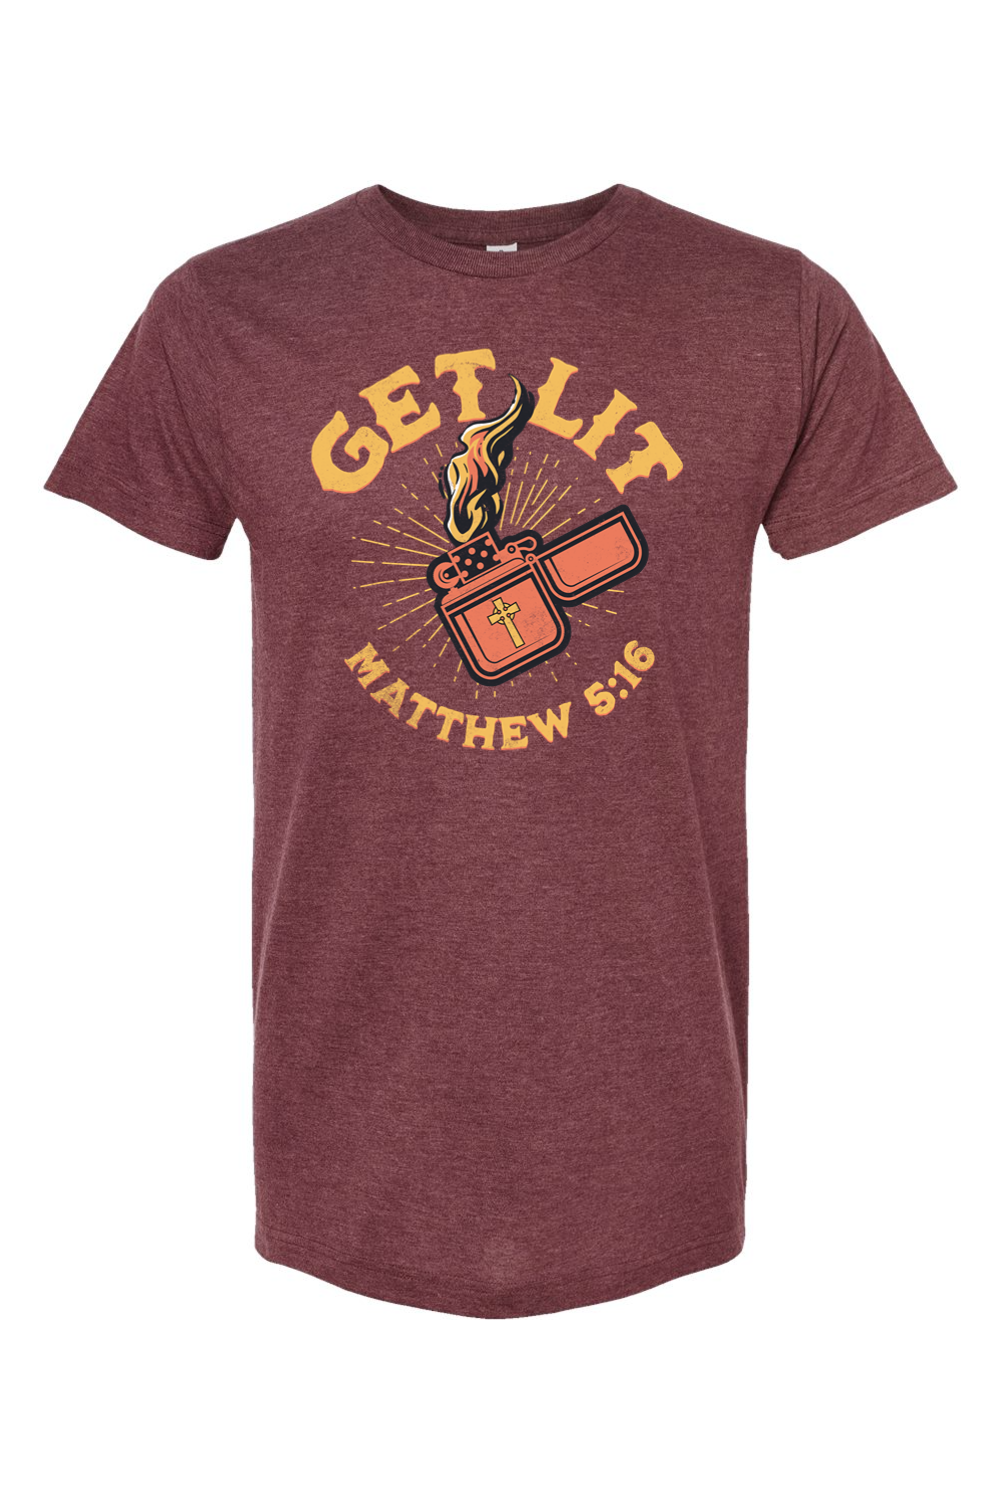 Get Lit - Matthew 5:16 - T-Shirt